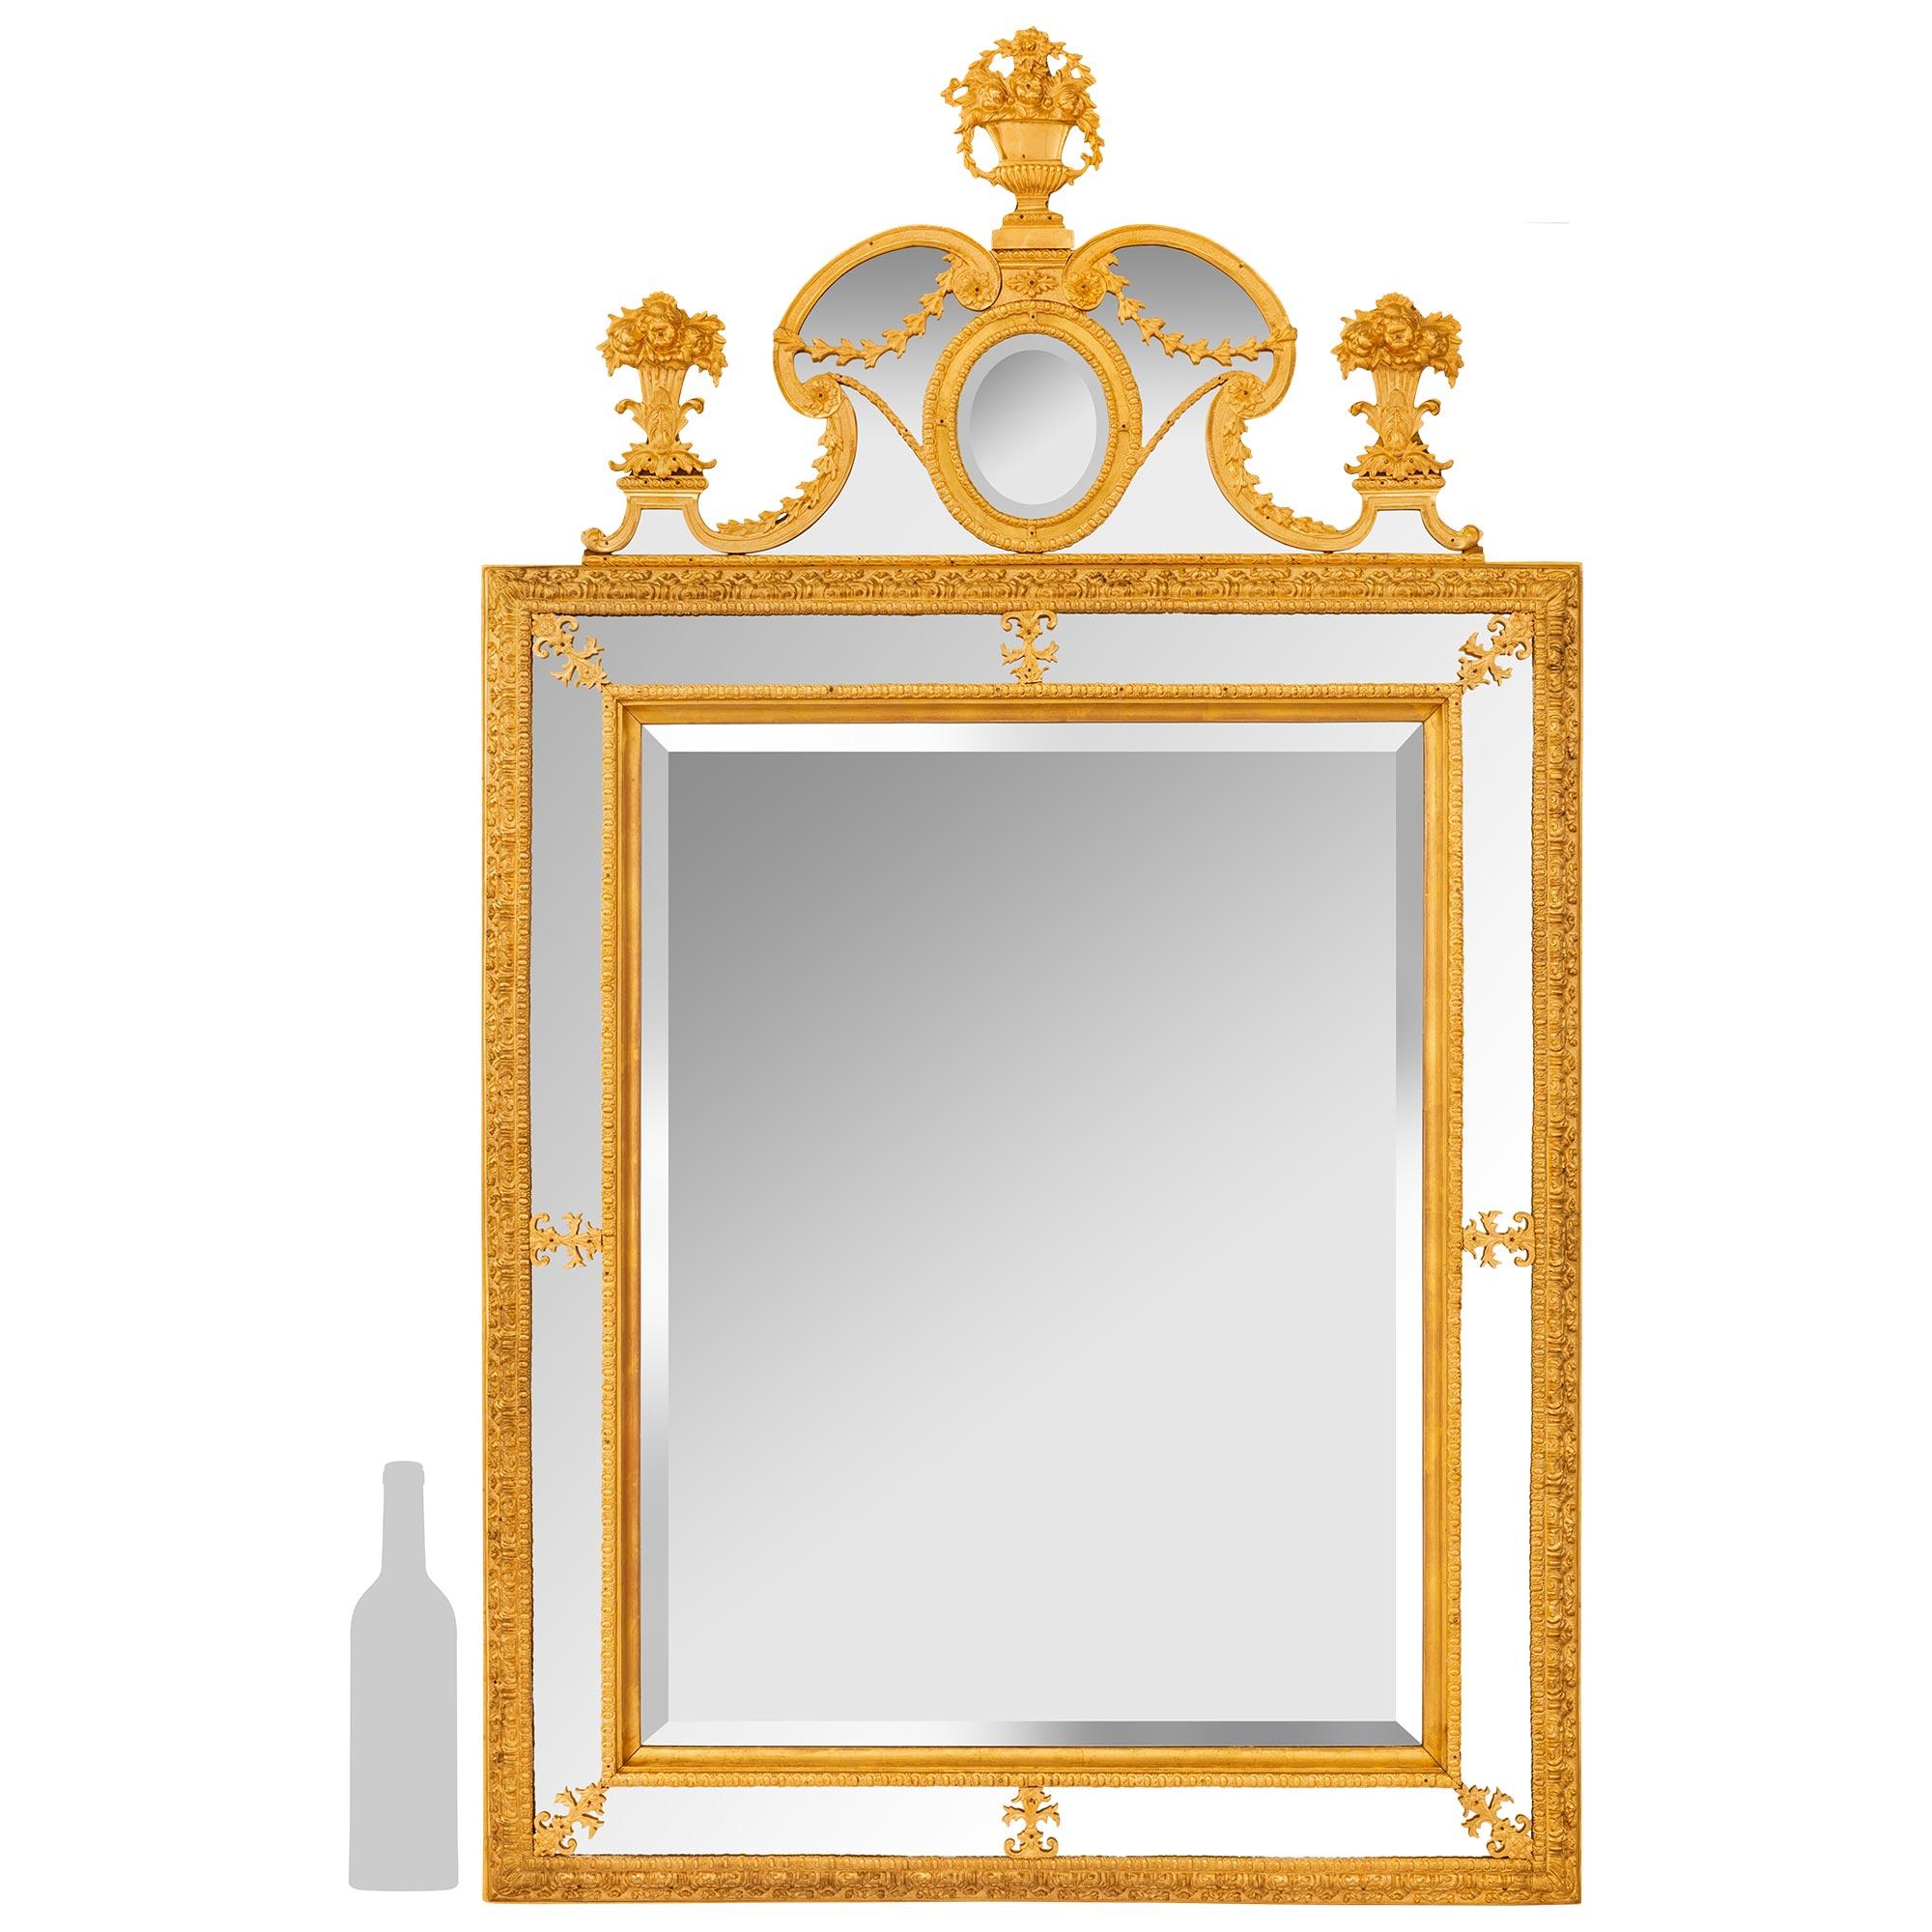 Ein sensationeller und qualitativ hochwertiger schwedischer neoklassizistischer Spiegel aus dem frühen 19. Ormolu-Spiegel. Die originale, doppelt gerahmte, abgeschrägte Spiegelplatte ist in eine Ormolu-Bordüre eingefasst, die in der Mitte und in den